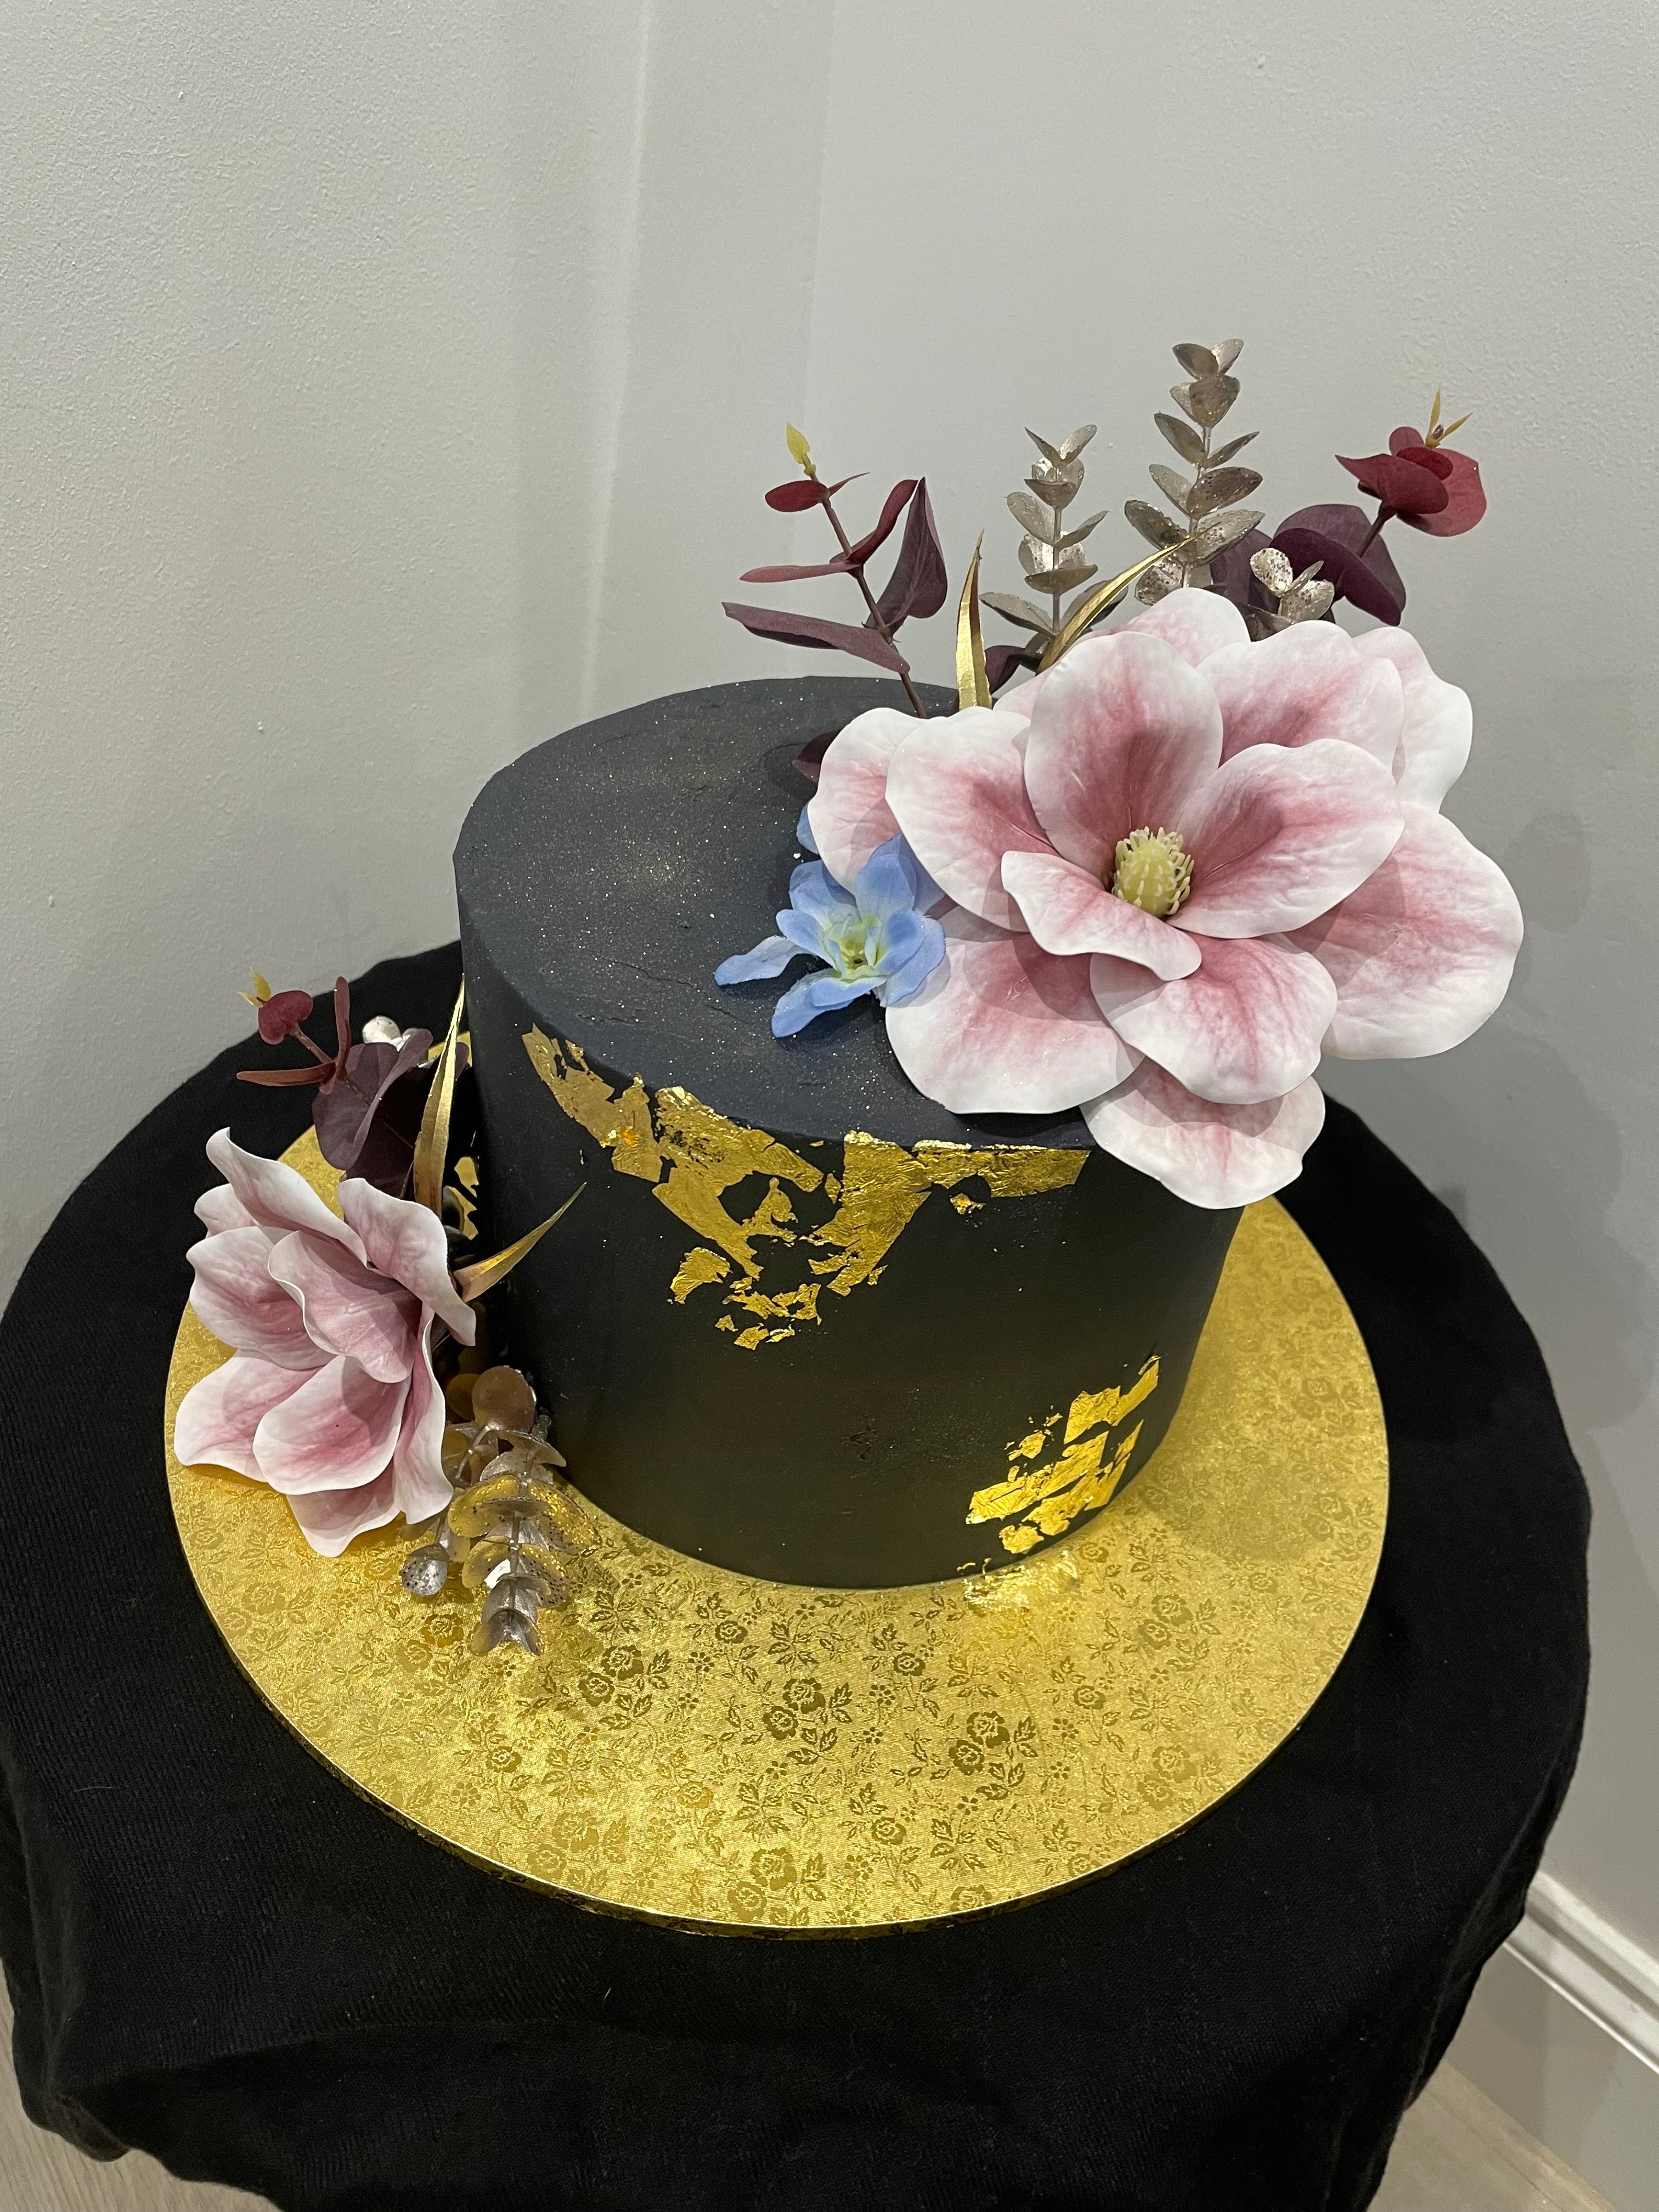 BLACK AND GOLDLEAF OCCASION CAKE